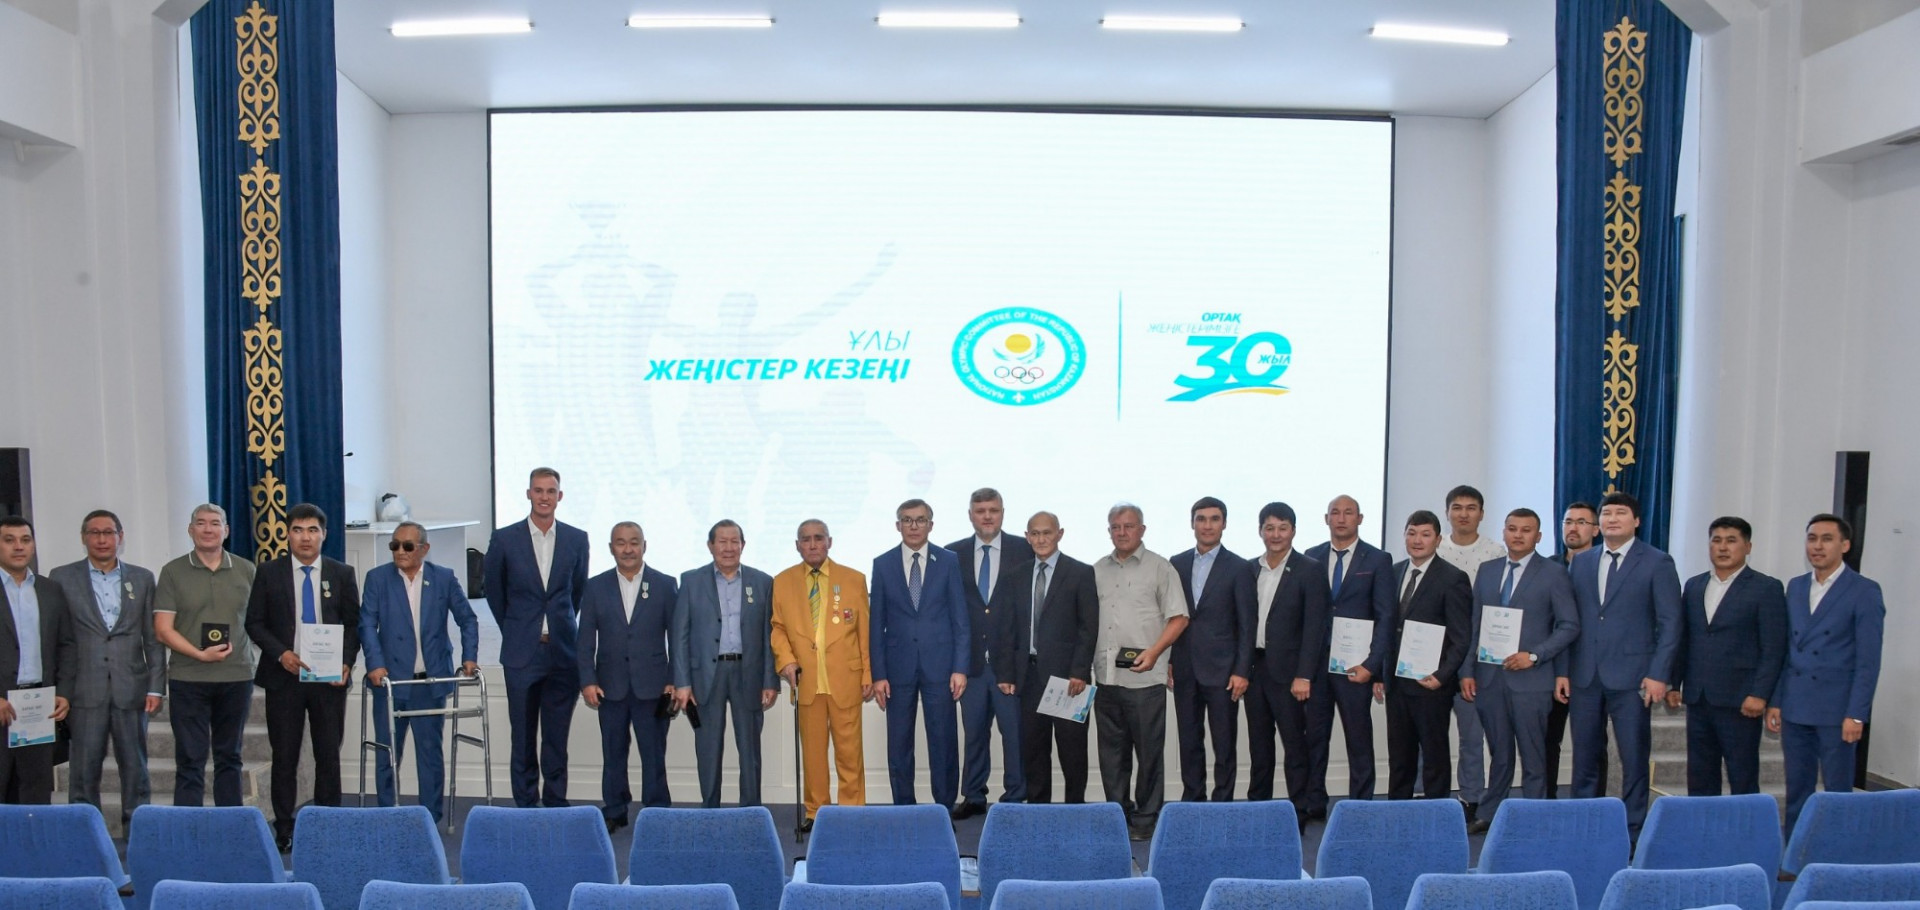 Подробнее о статье Юбилей Олимпийского движения в Казахстане: НОК РК чествовал деятелей спорта Алматинской области